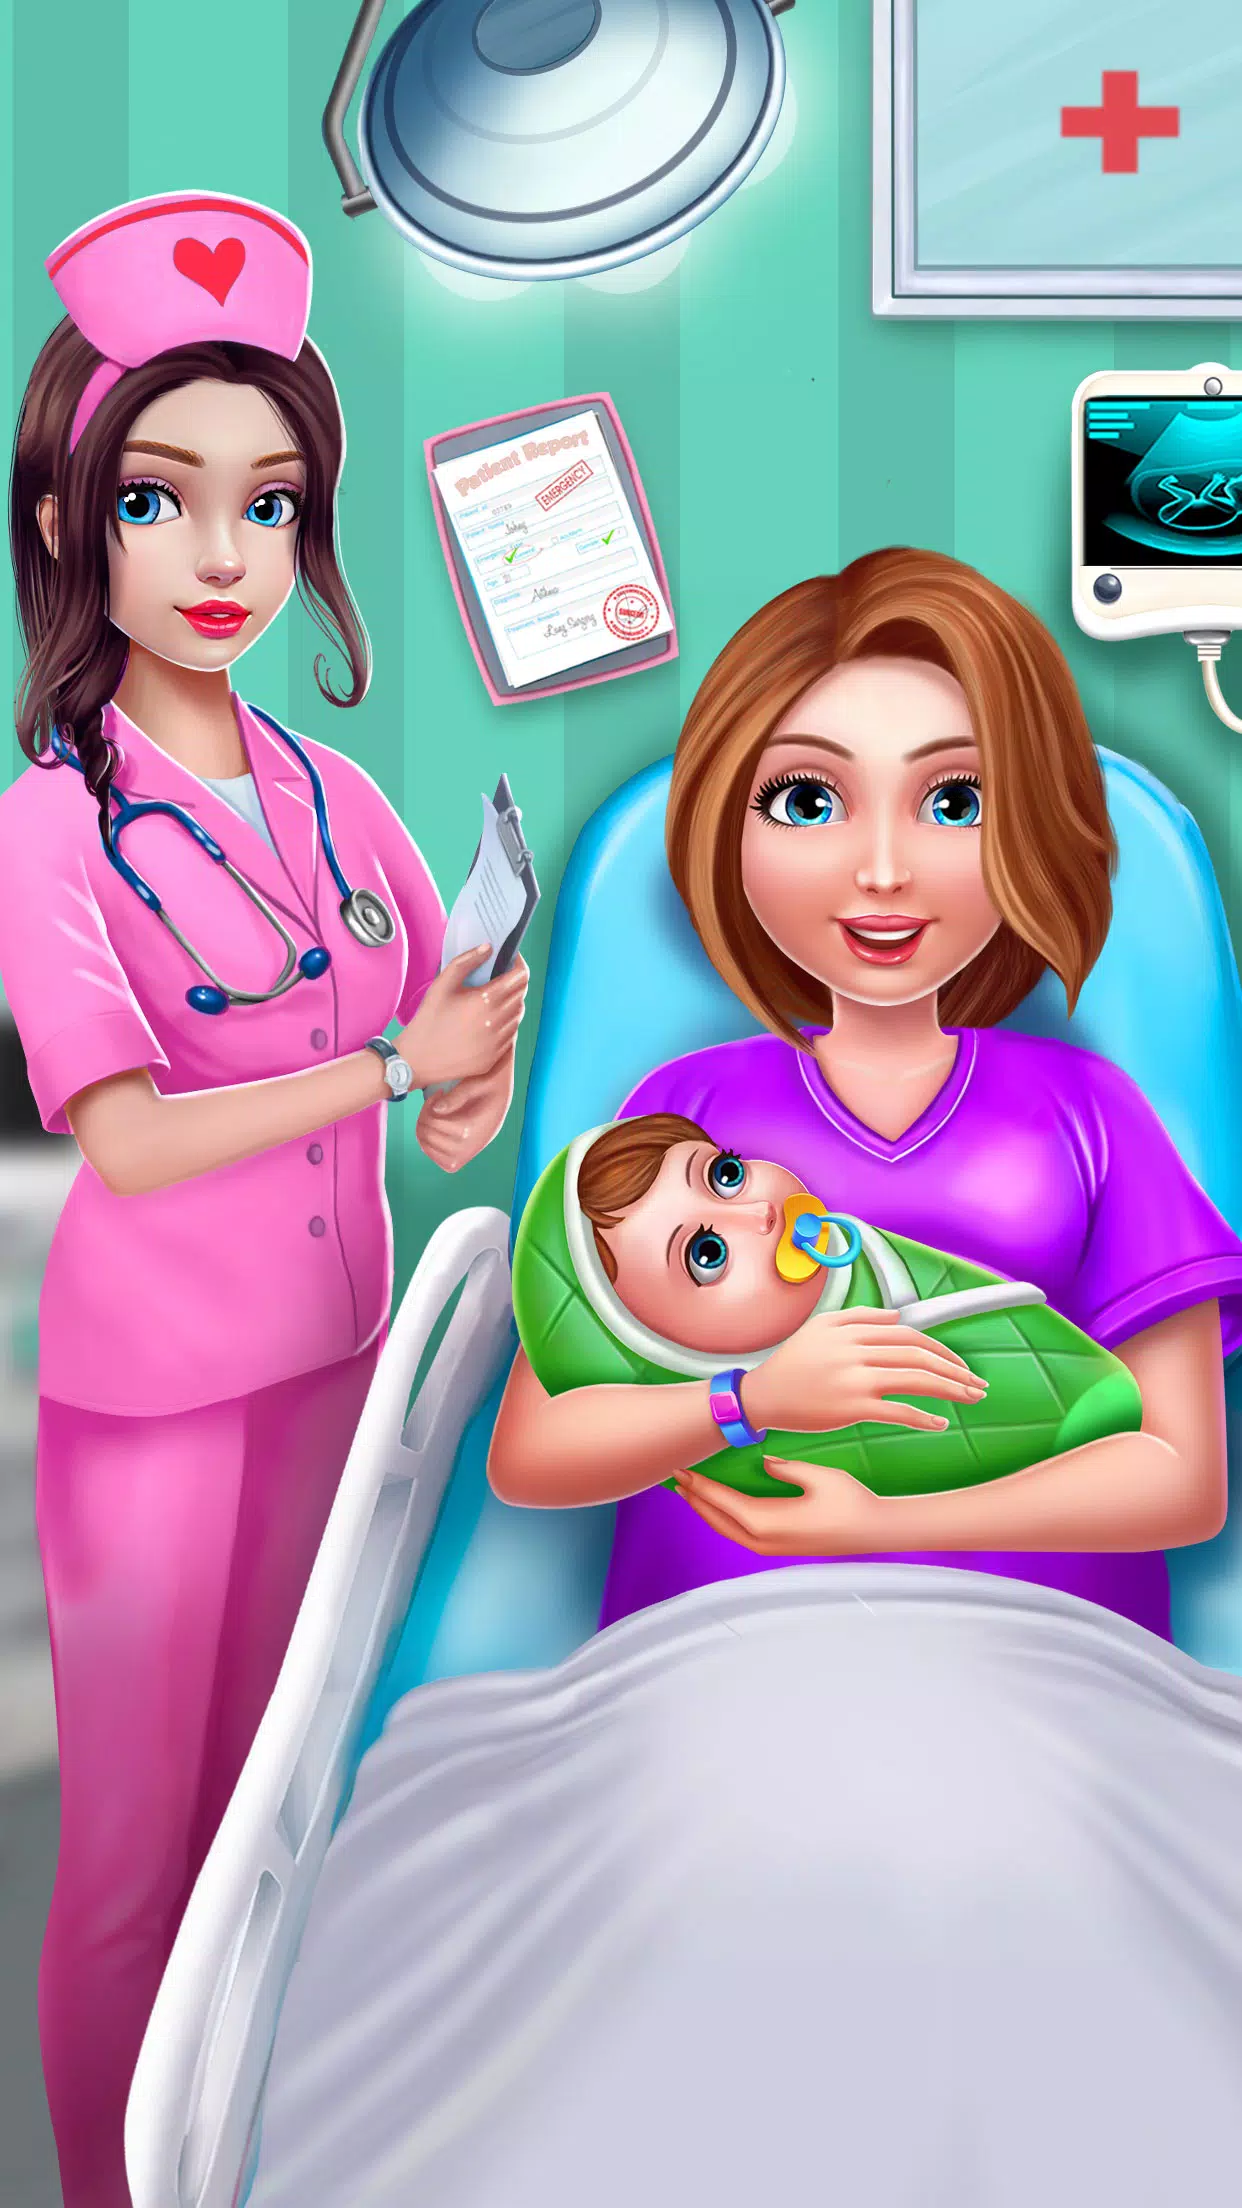 Download do APK de Jogos de princesa grávidas para Android